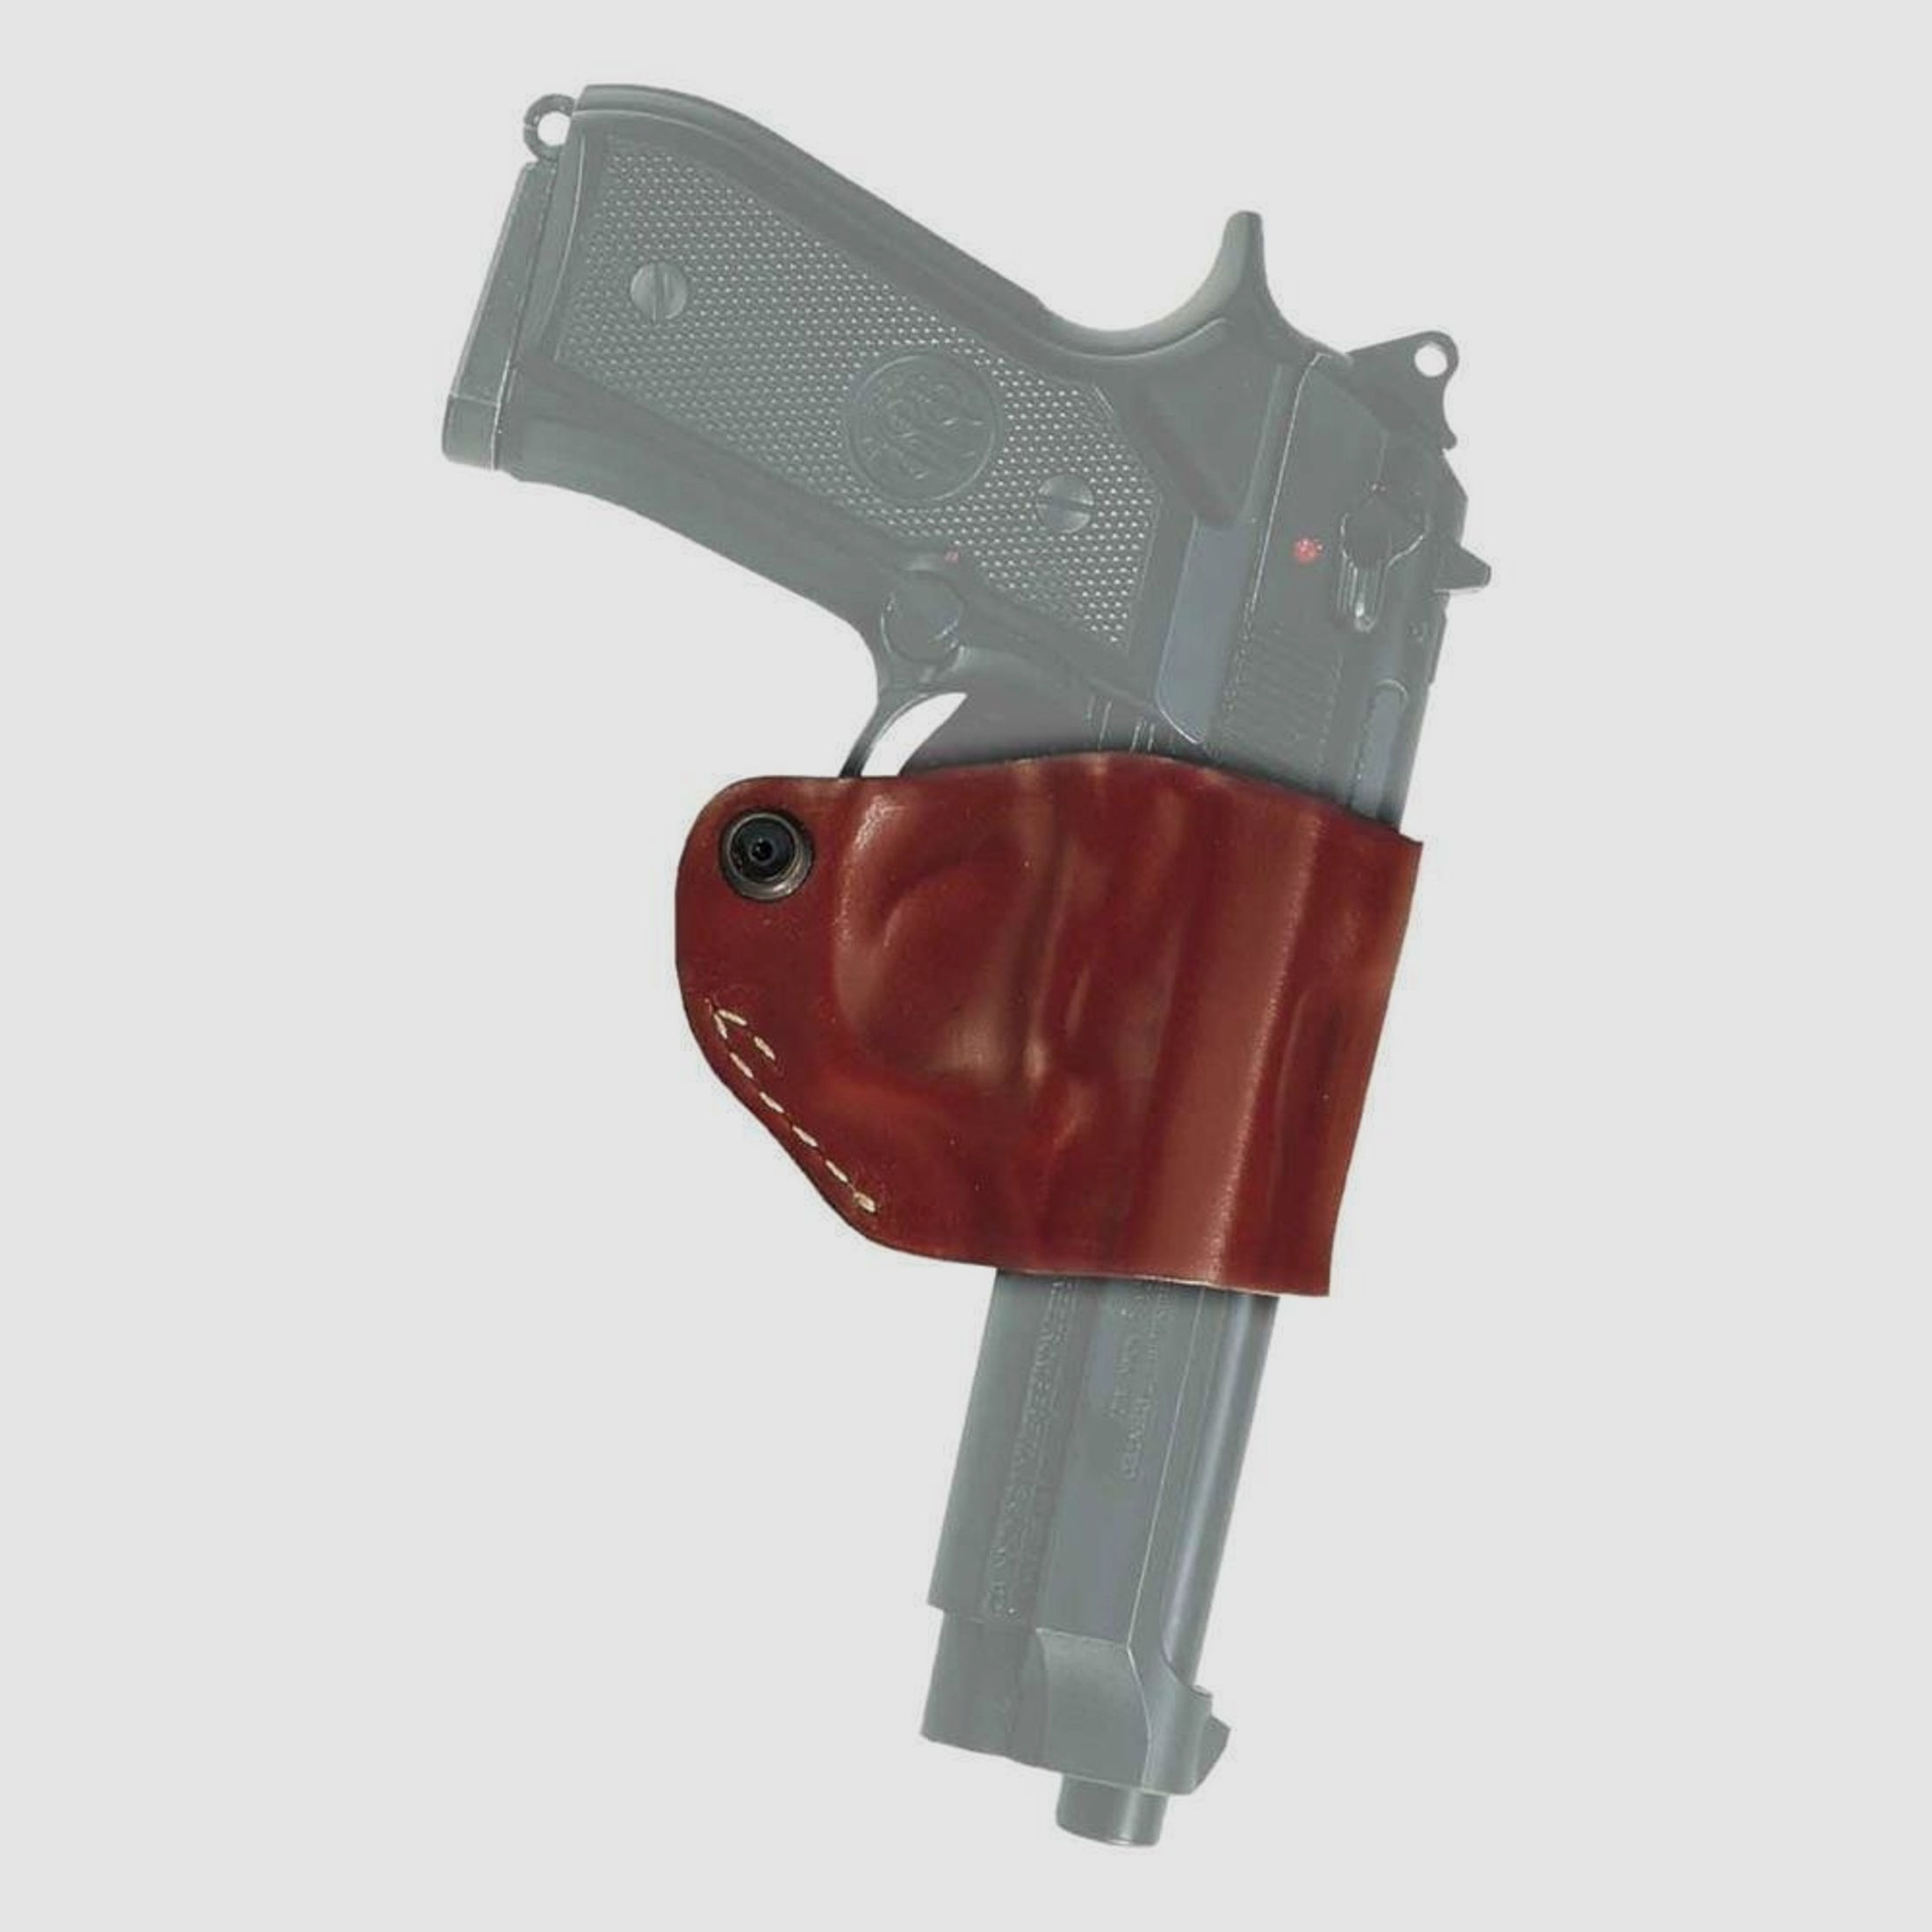 Gürtelholster "Yaqui Slide" Glock 17/17X/19/19X/26/29/30/34/35/36/37/38/45, Walther P22/P22Q Braun Rechtshänder